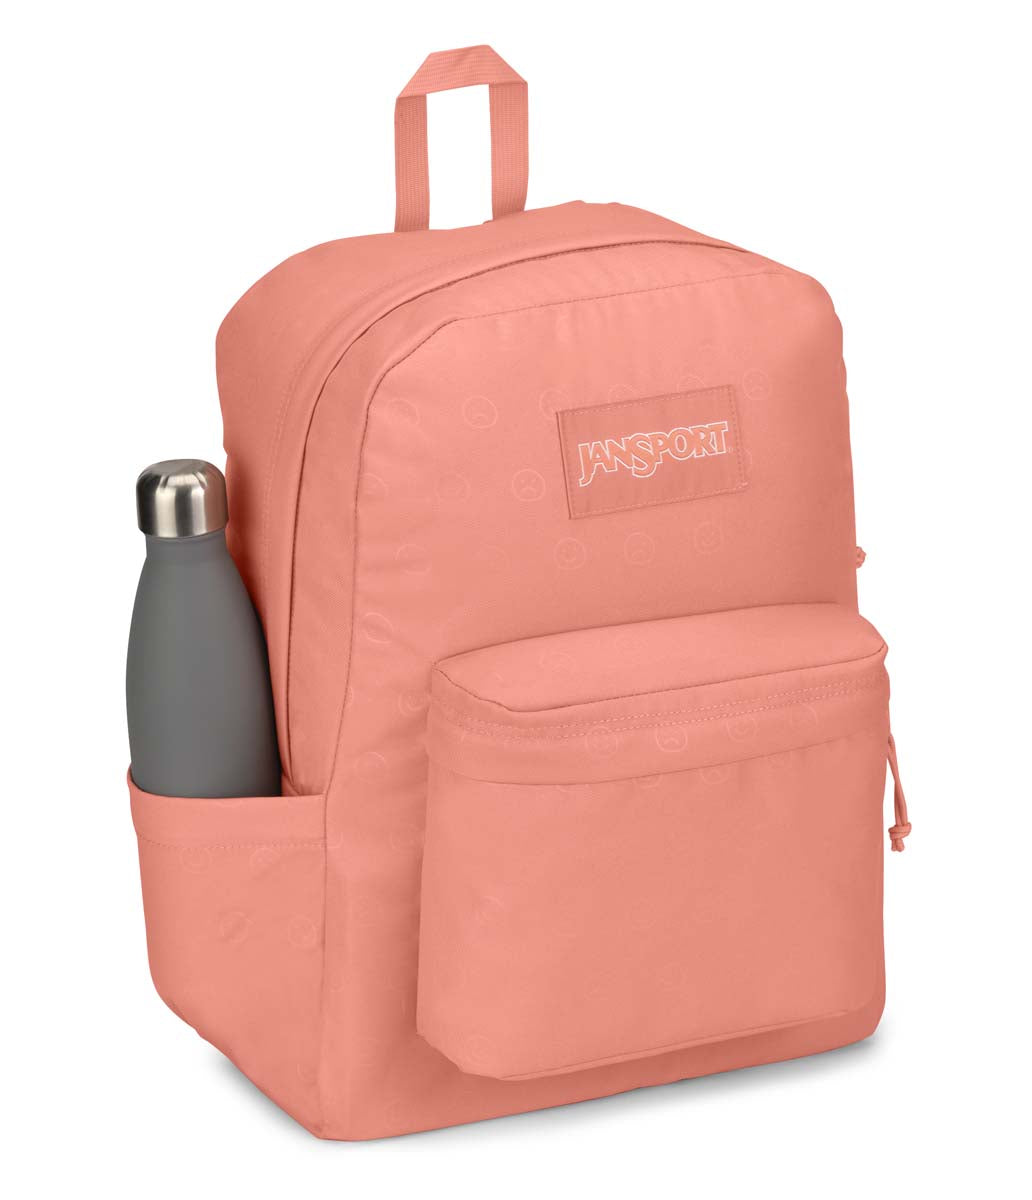 JanSport - Superbreak Plus FX Backpack 26L